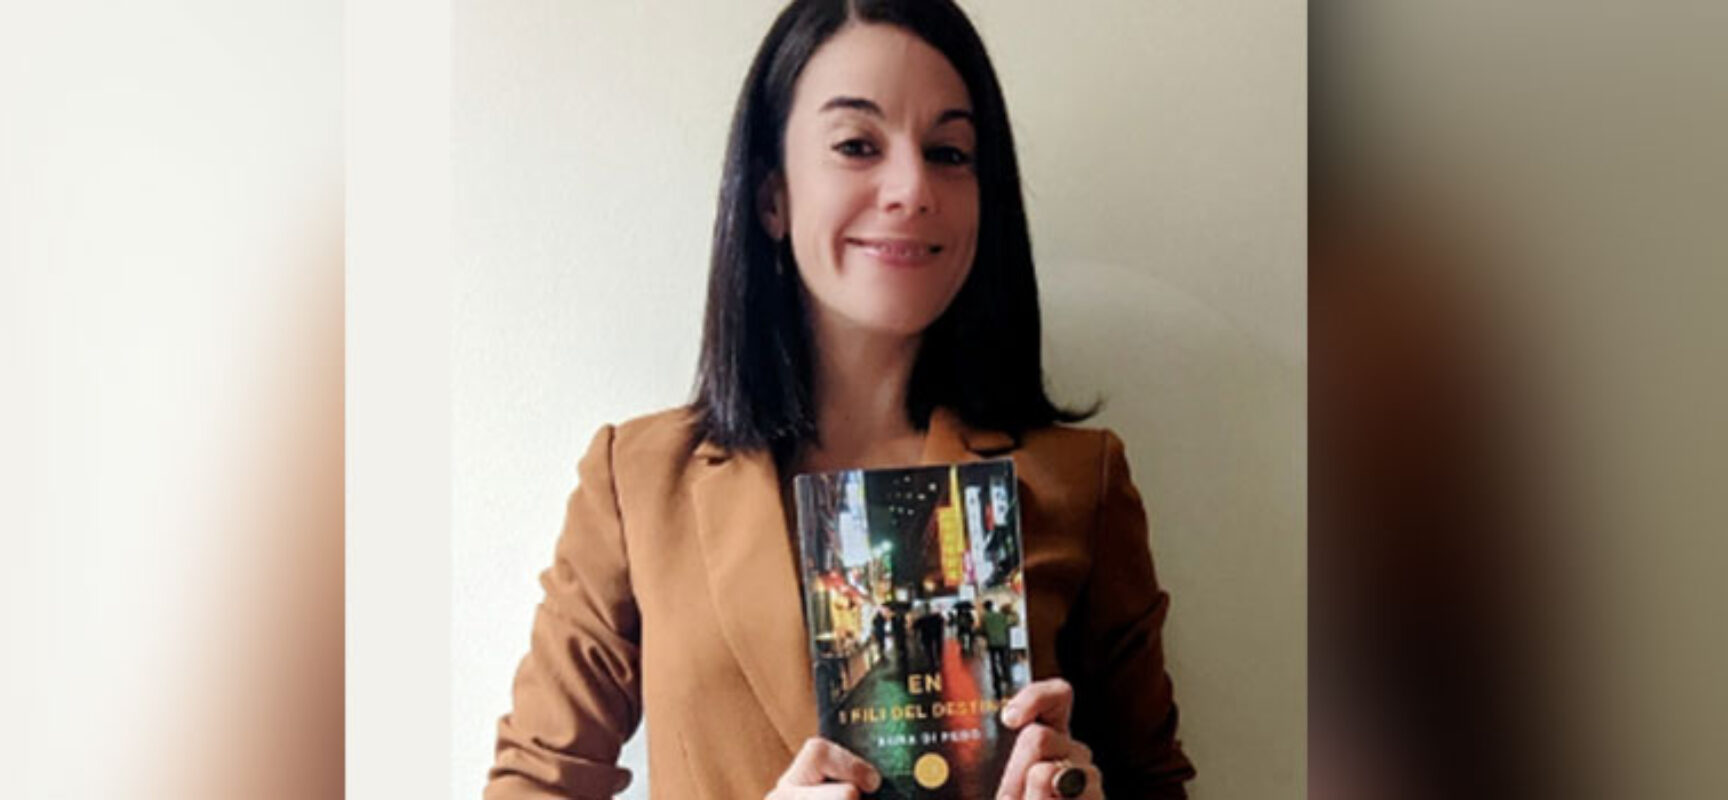 Aura Di Febo a Bisceglie per il suo esordio letterario presenta “En I fili del destino”